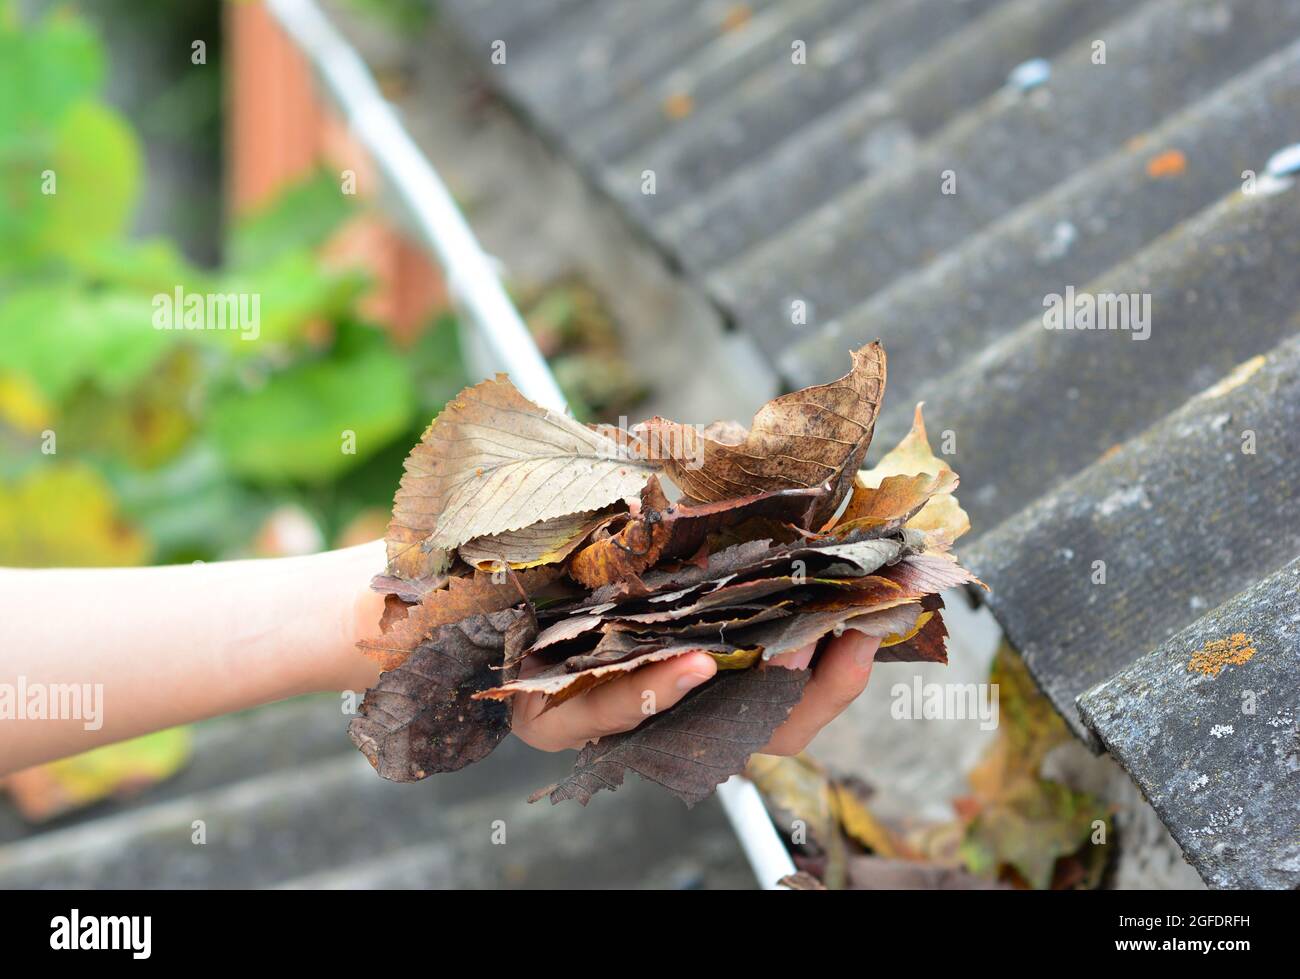 Un dueño de casa está limpiando los canalones del techo quitándose los escombros, las hojas secas caídas a mano para mantener el canalón de lluvia sin obstrucciones y libre de agua de lluvia Foto de stock